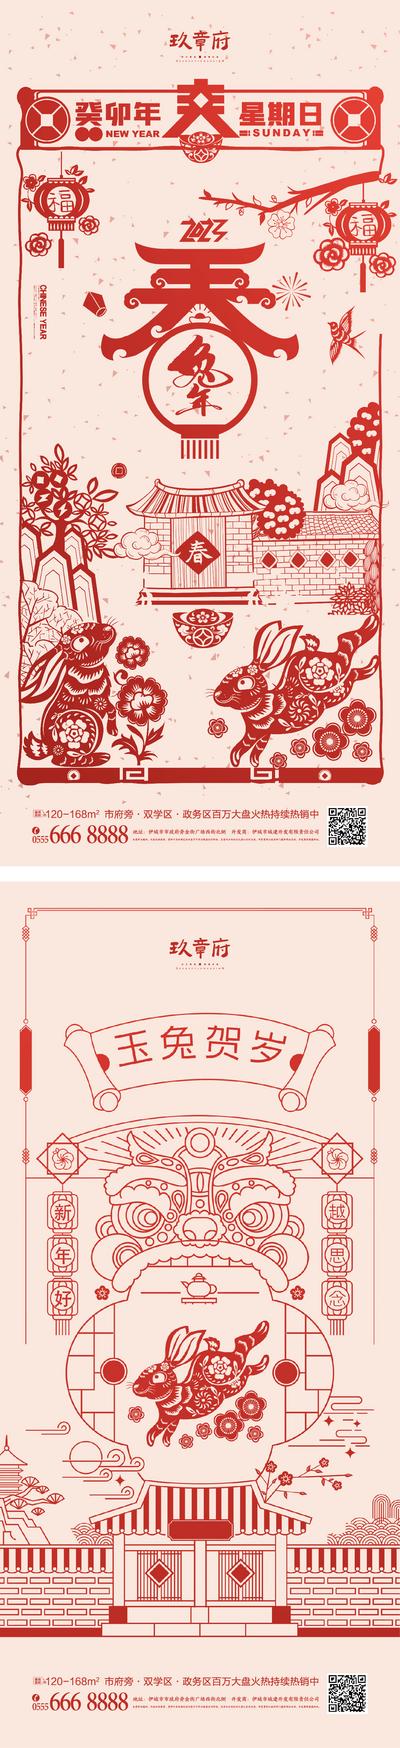 【南门网】海报 中国传统节日  兔年 春节 除夕 小年 新年  剪纸  灯笼 插画